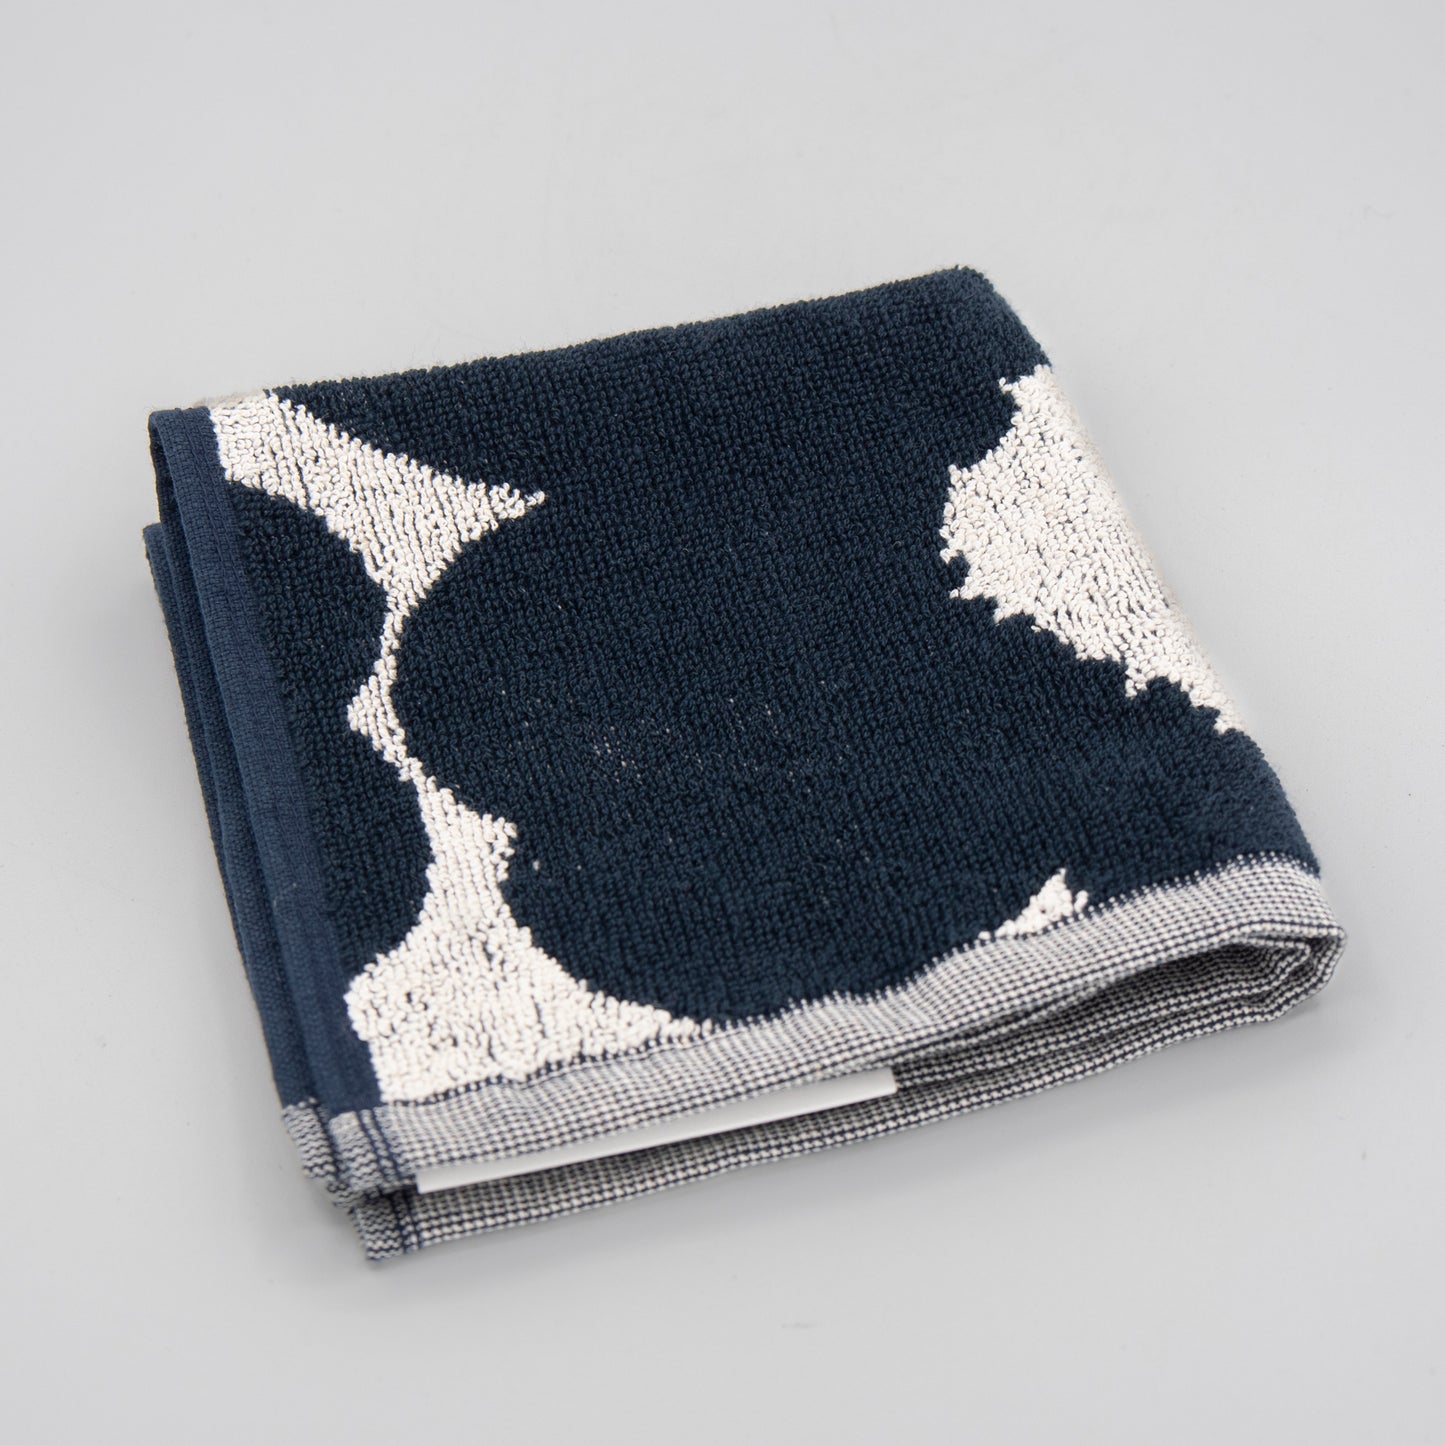 Marimekko - Unikko Washcloth - Dark Blue Poppy